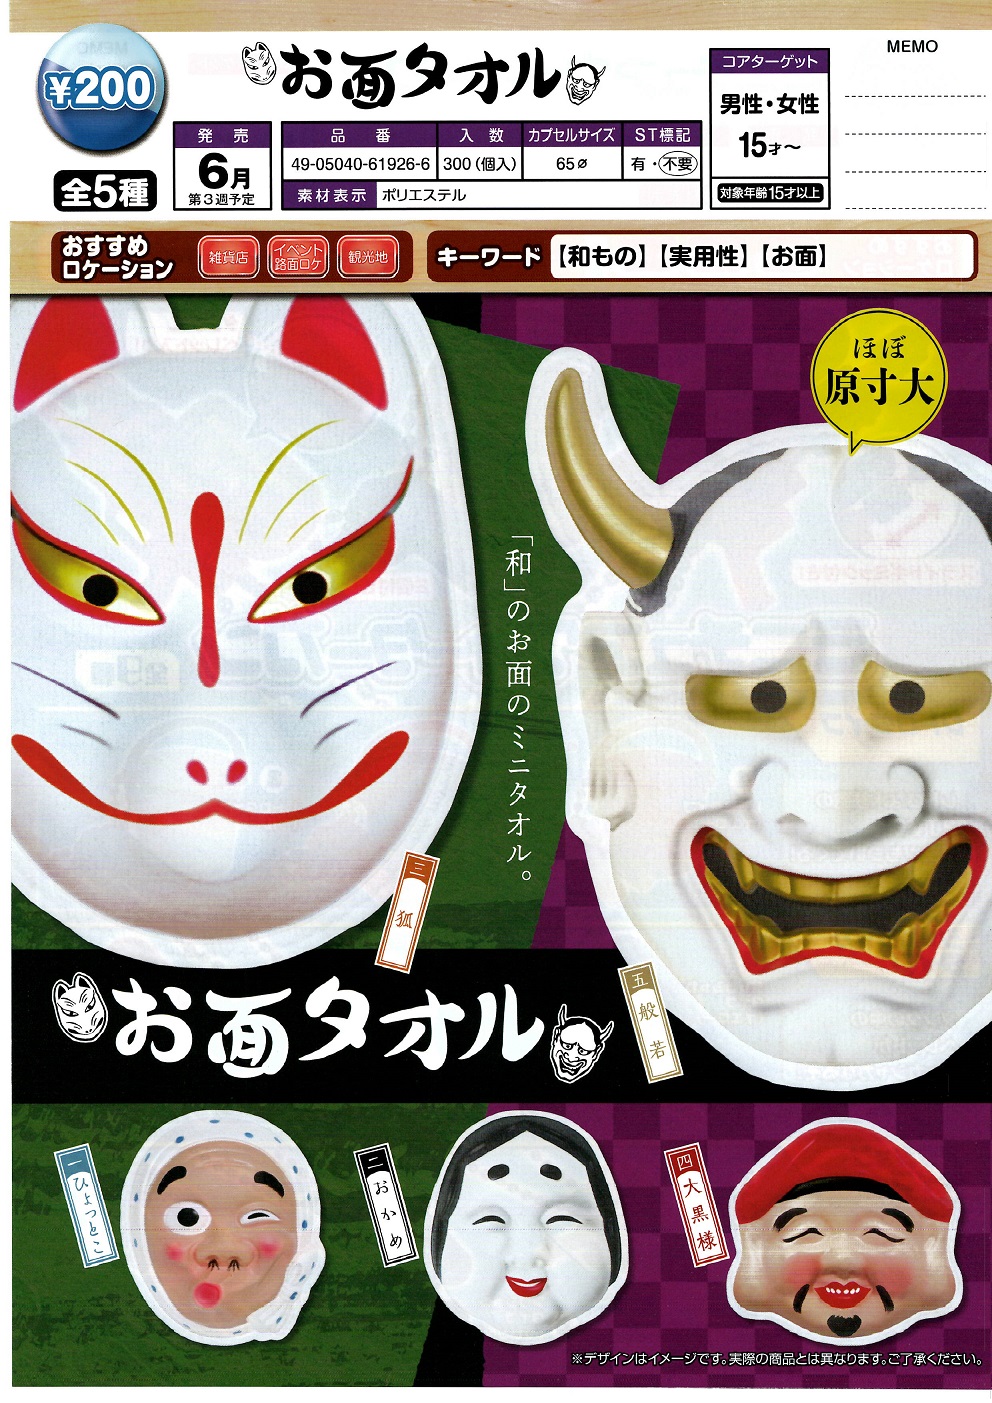 200日元扭蛋 迷你毛巾 和式面具Ver. 全5种 (1袋50个) 619266